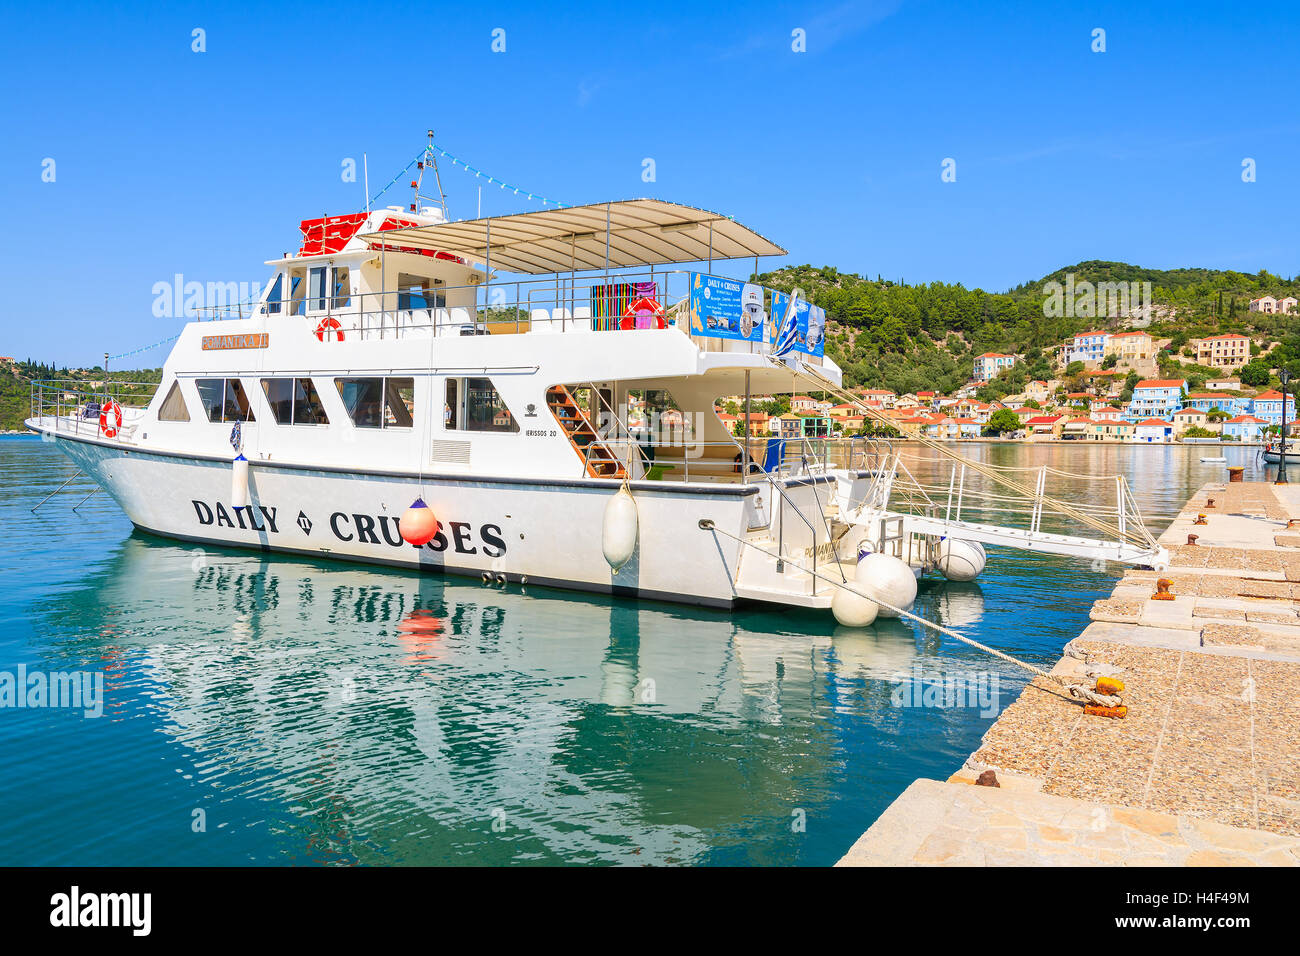 VATHI Hafen, Insel ITHAKA, Griechenland - SEP 19, 2014: Touristische Boote im Hafen von Vathi auf Insel Ithaka. Tägliche Kreuzfahrten von Kefalonia Island sind beliebt bei Touristen, die Urlaub auf Griechen Inseln zu verbringen. Stockfoto